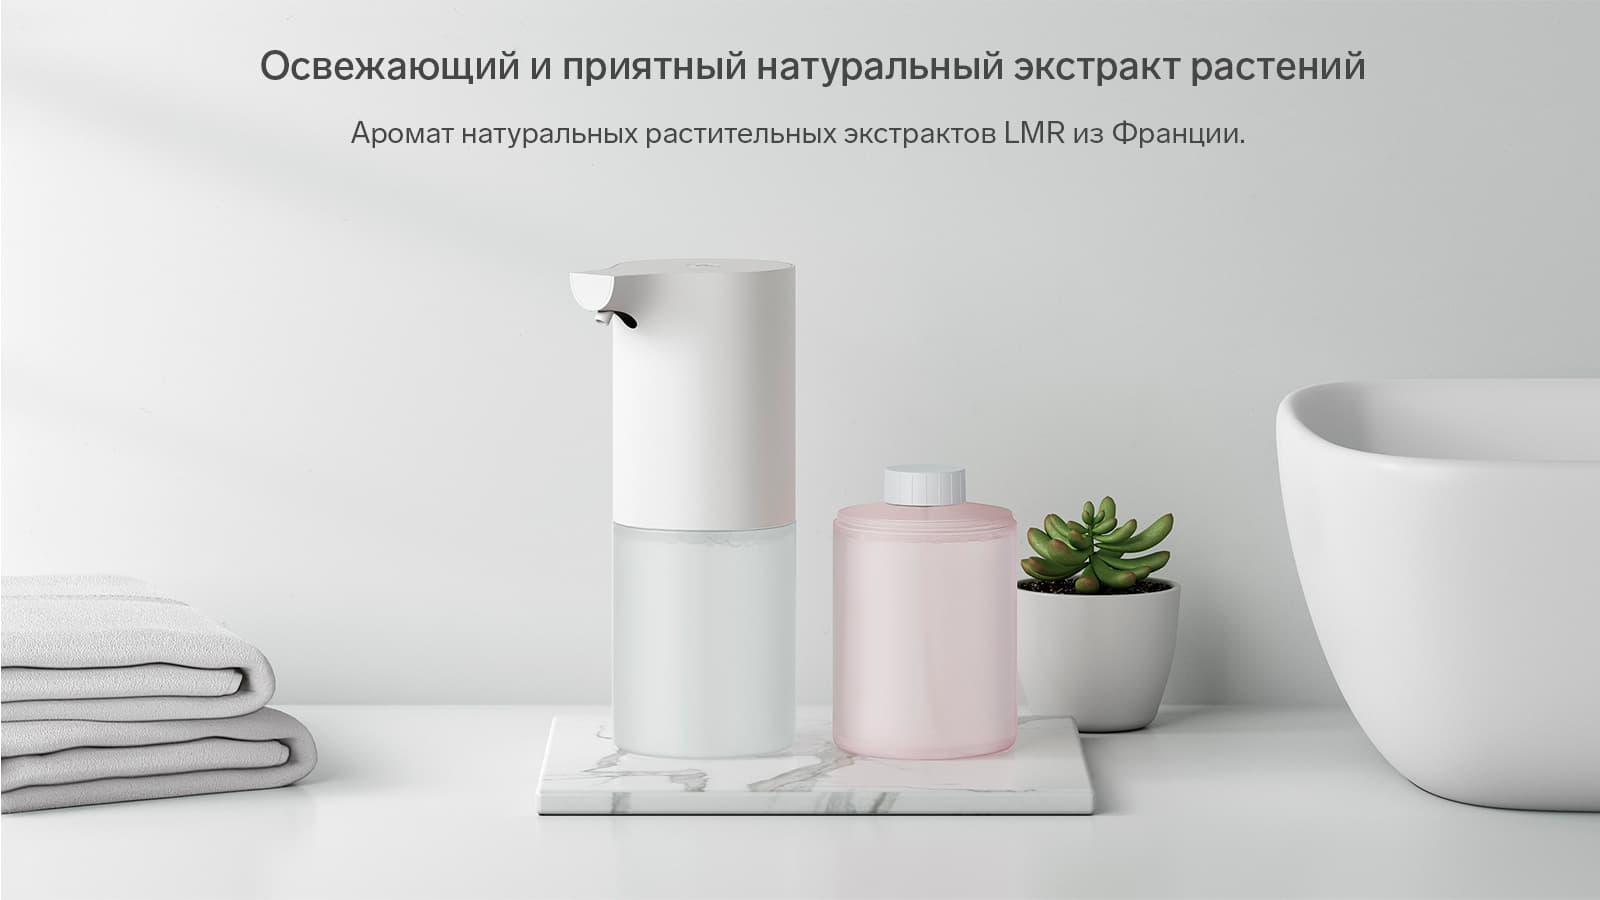 Mi Automatic Soap Dispenser натуральный экстракт растений